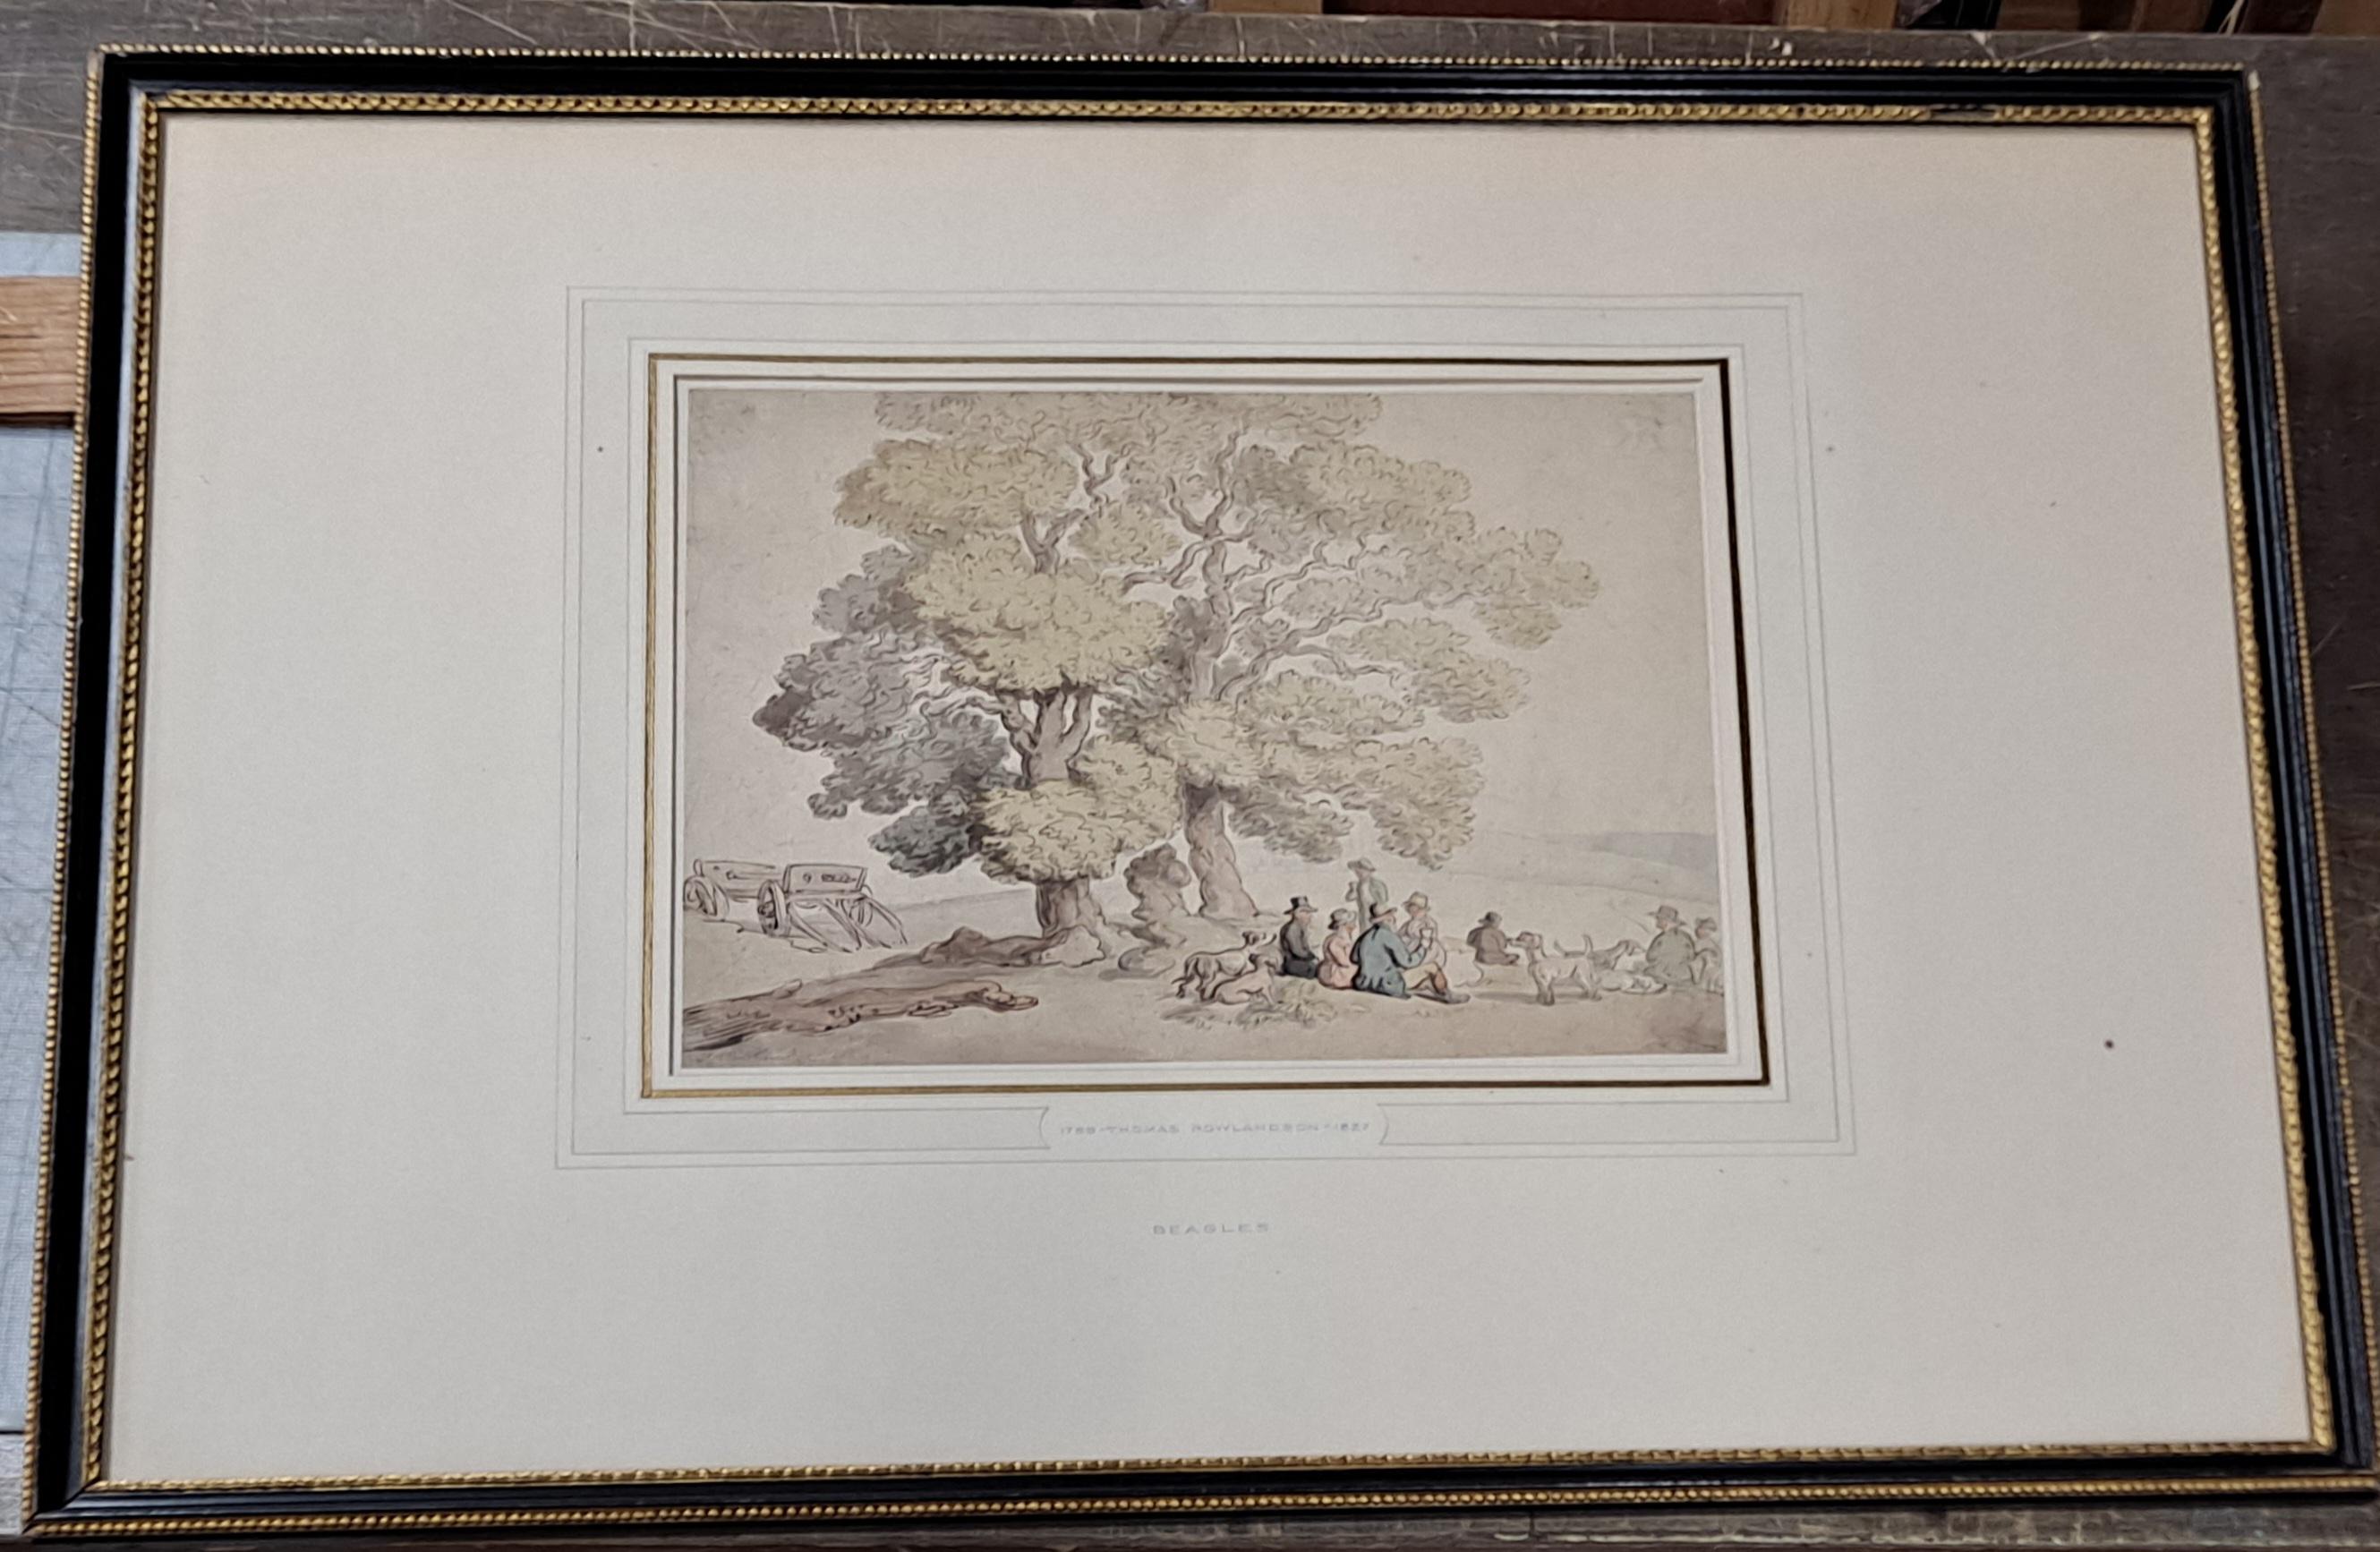 Thomas Rolandson (Englisch, 1756-1829) "Beagles" Aquarell aus der Collection'S von David Rockefeller

Ungerahmt 9" x 11"

Gerahmt 19" x 24"